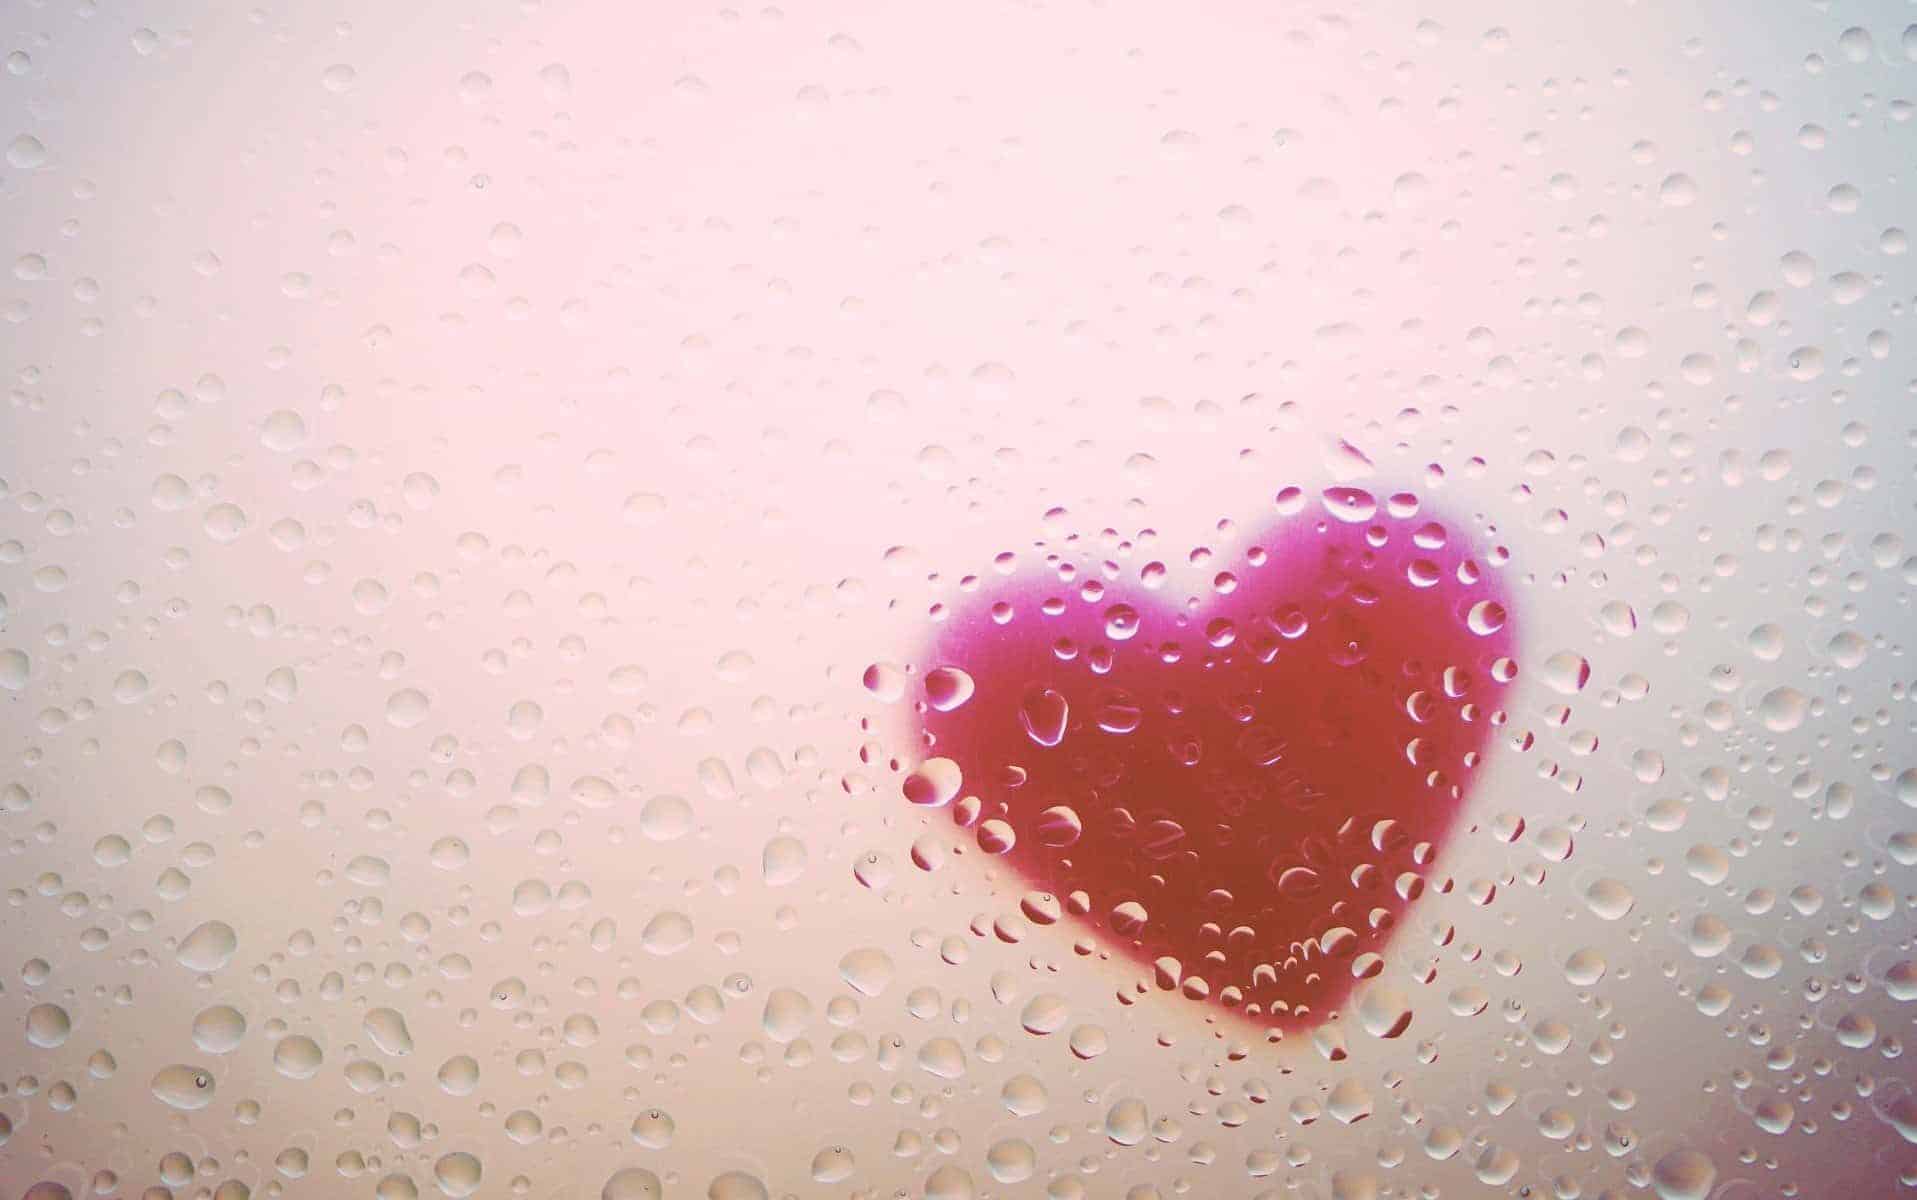 Uma representação de um coração em plástico cercada de pingos d'água.